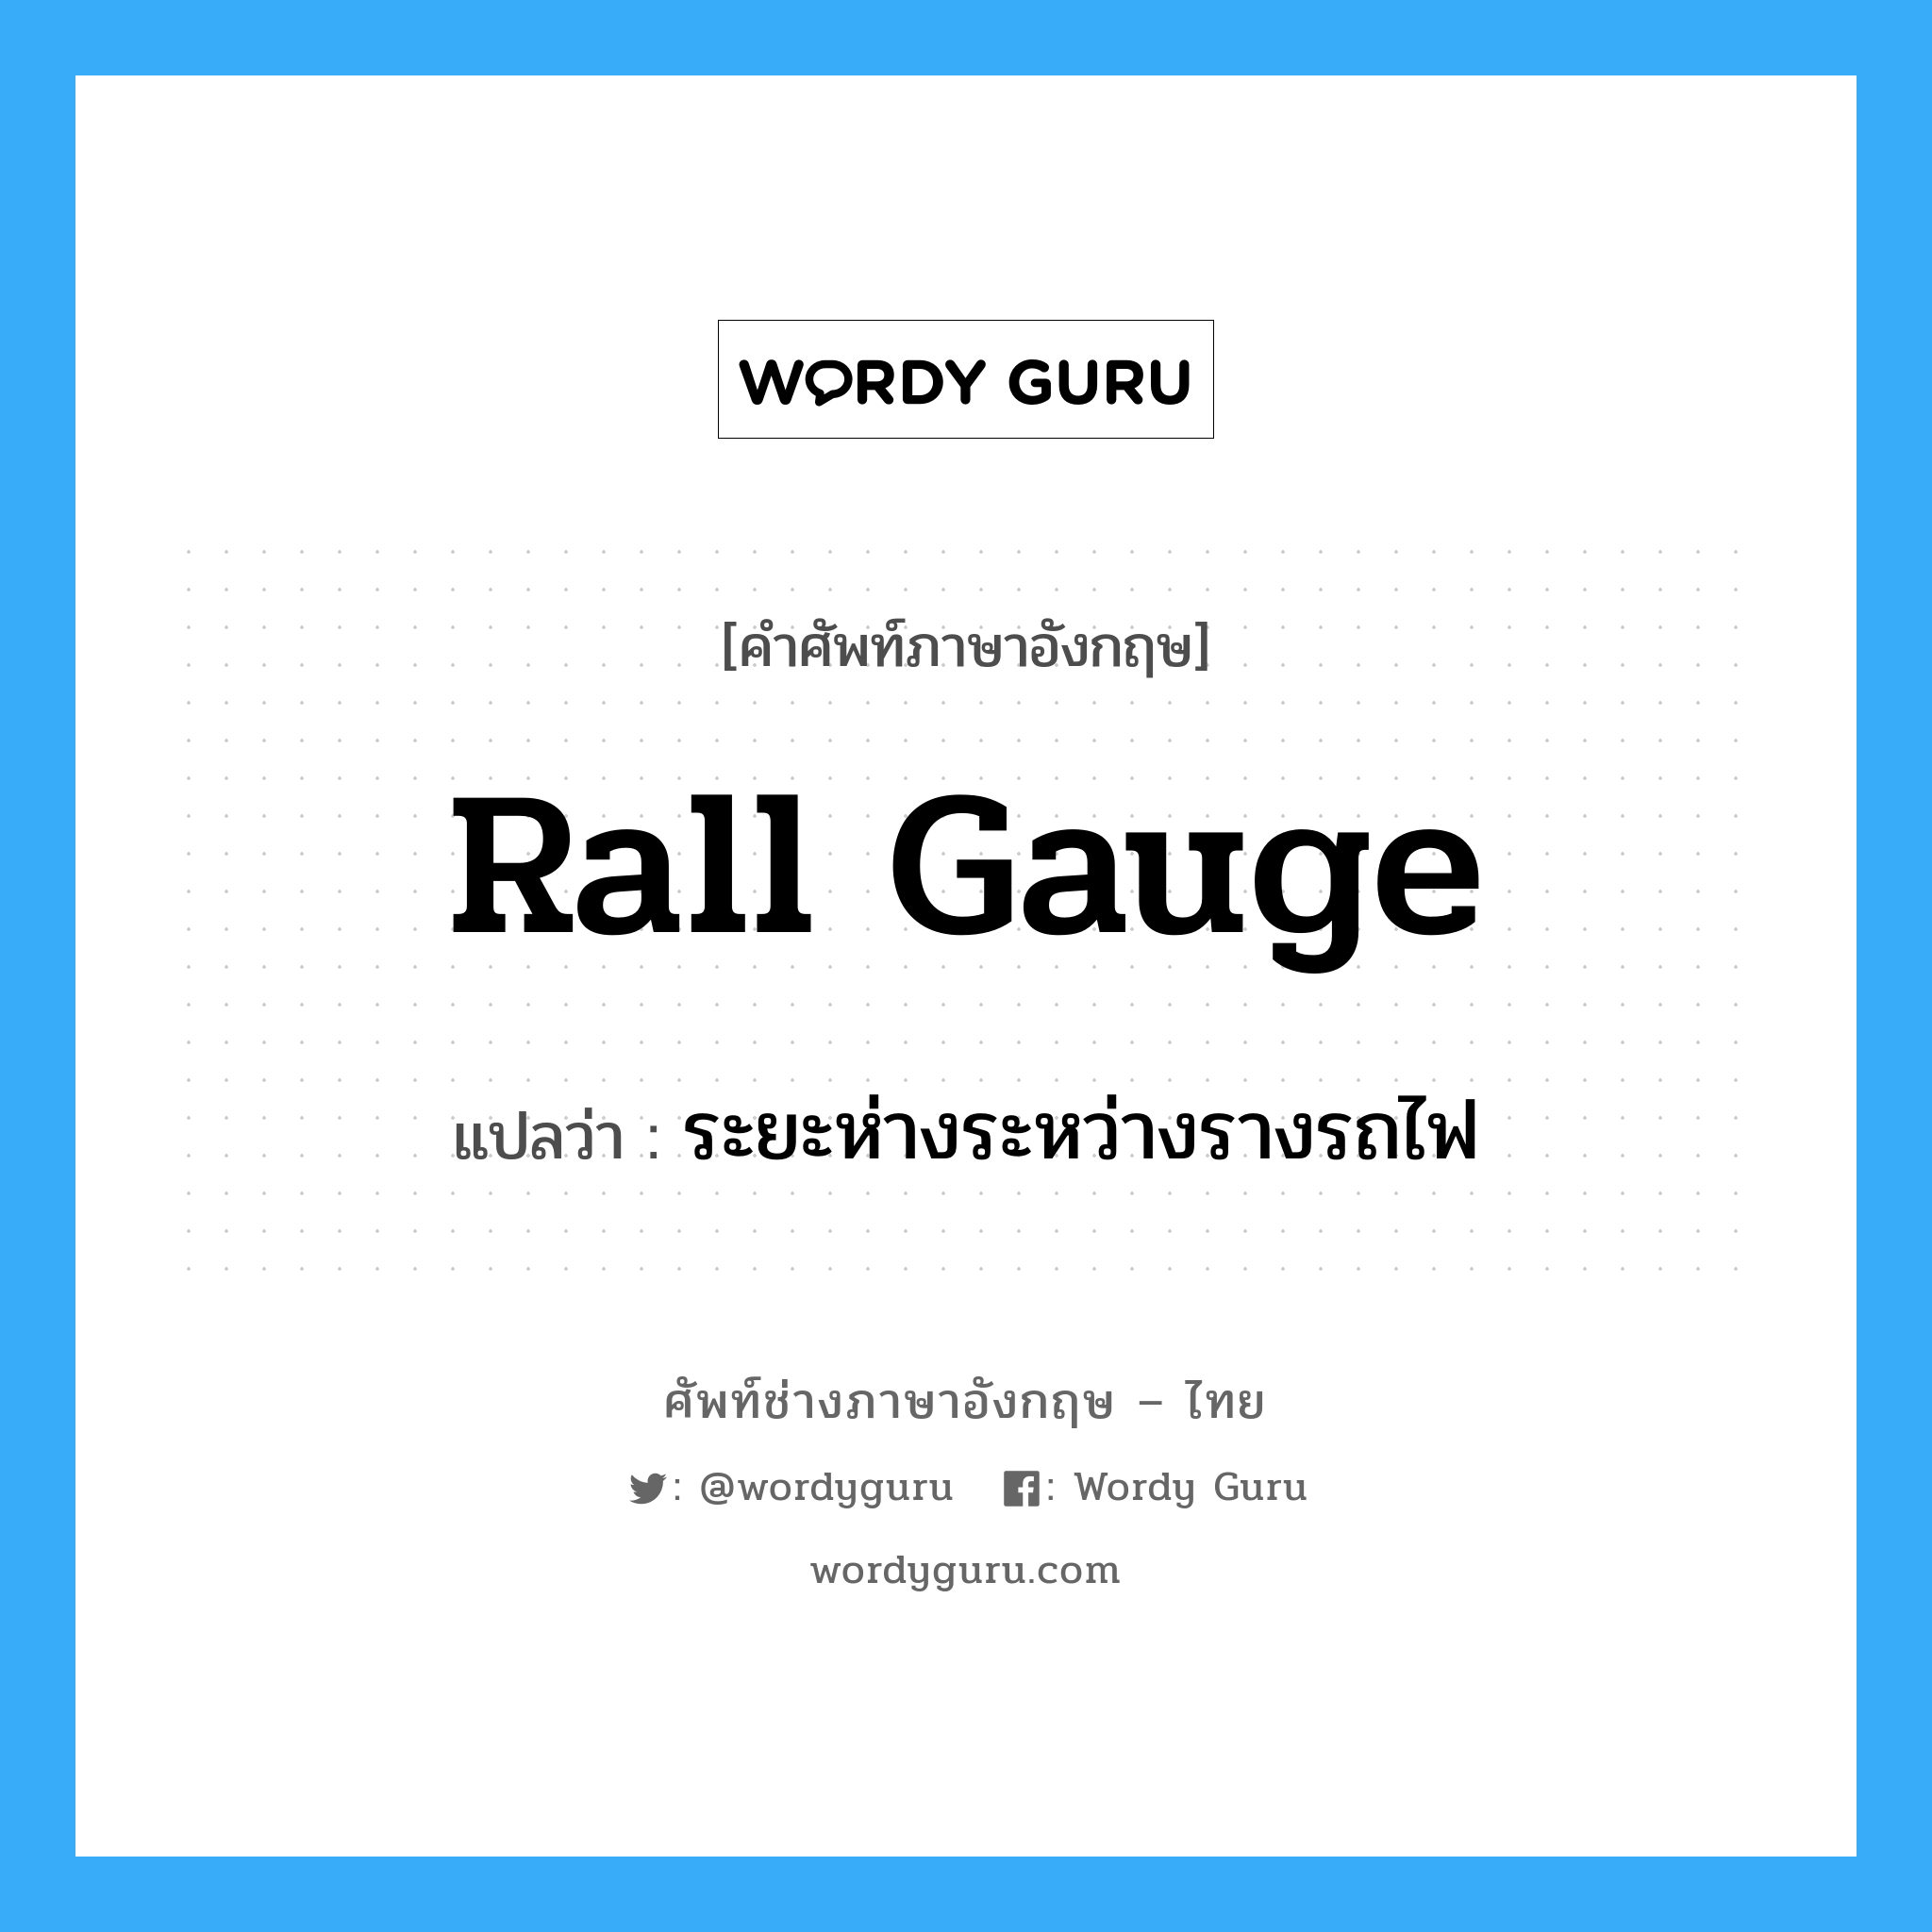 ระยะห่างระหว่างรางรถไฟ ภาษาอังกฤษ?, คำศัพท์ช่างภาษาอังกฤษ - ไทย ระยะห่างระหว่างรางรถไฟ คำศัพท์ภาษาอังกฤษ ระยะห่างระหว่างรางรถไฟ แปลว่า rall gauge